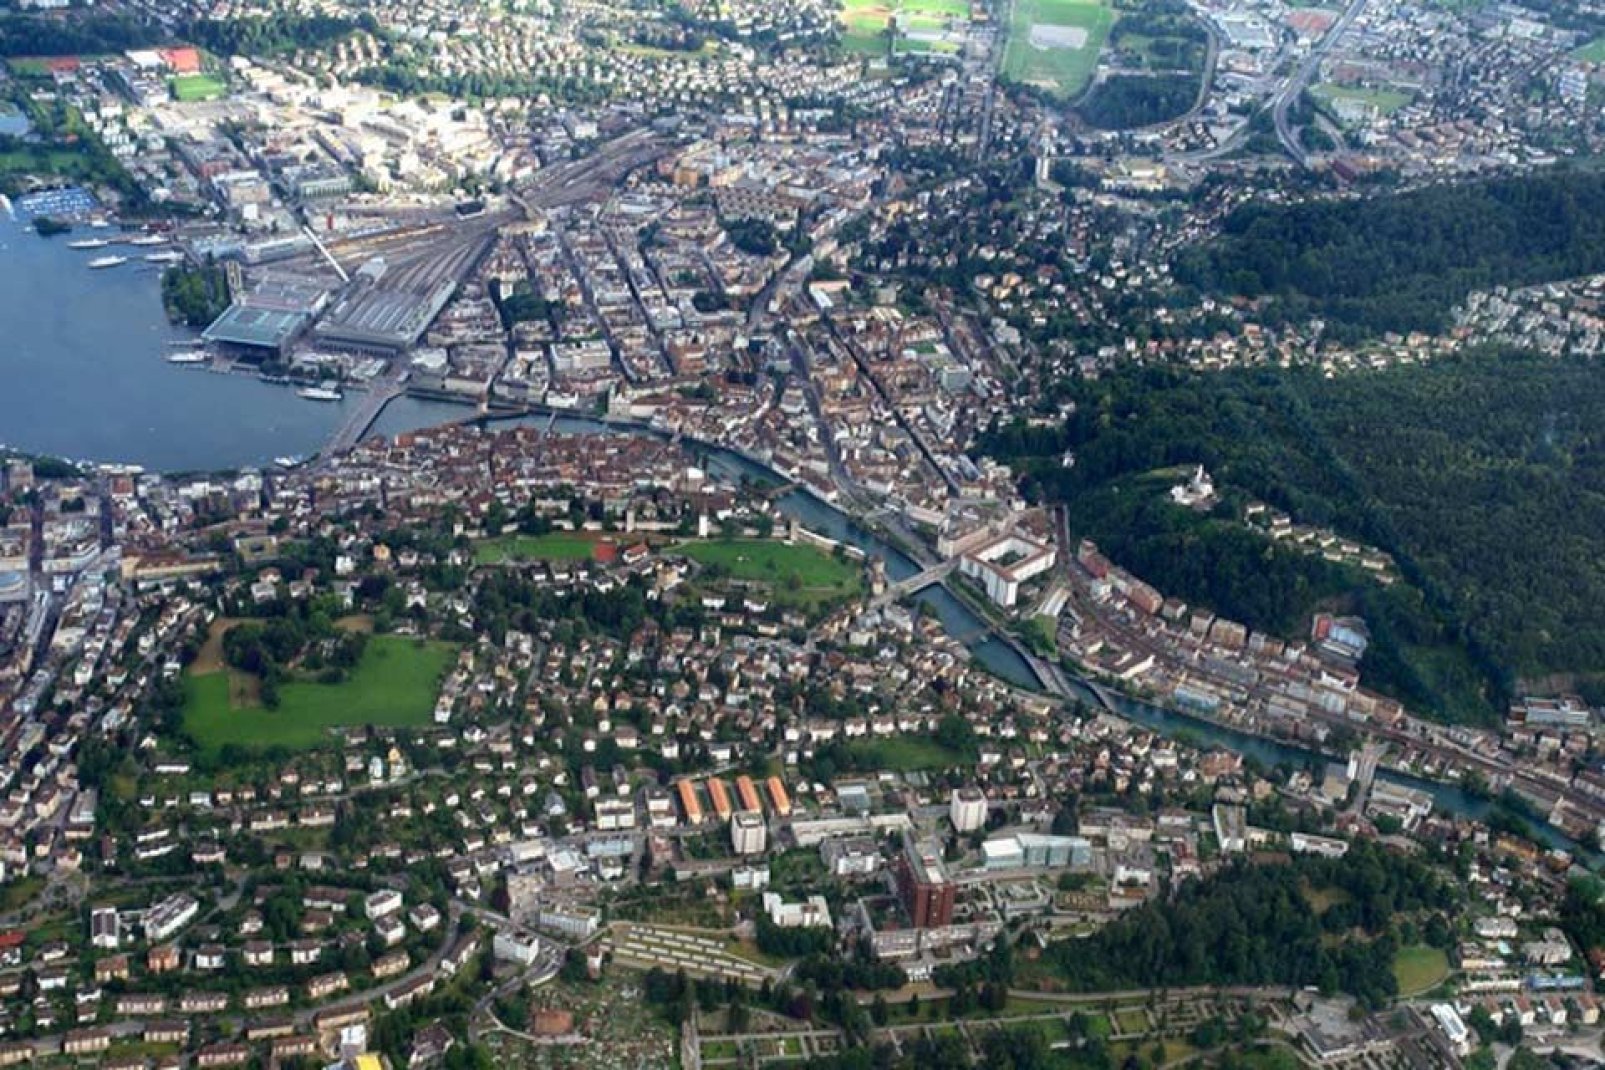 Luzern ist der Hauptort des gleichnamigen Schweizer Kantons. Die Stadt zählt ungefähr 80.000 Einwohner.